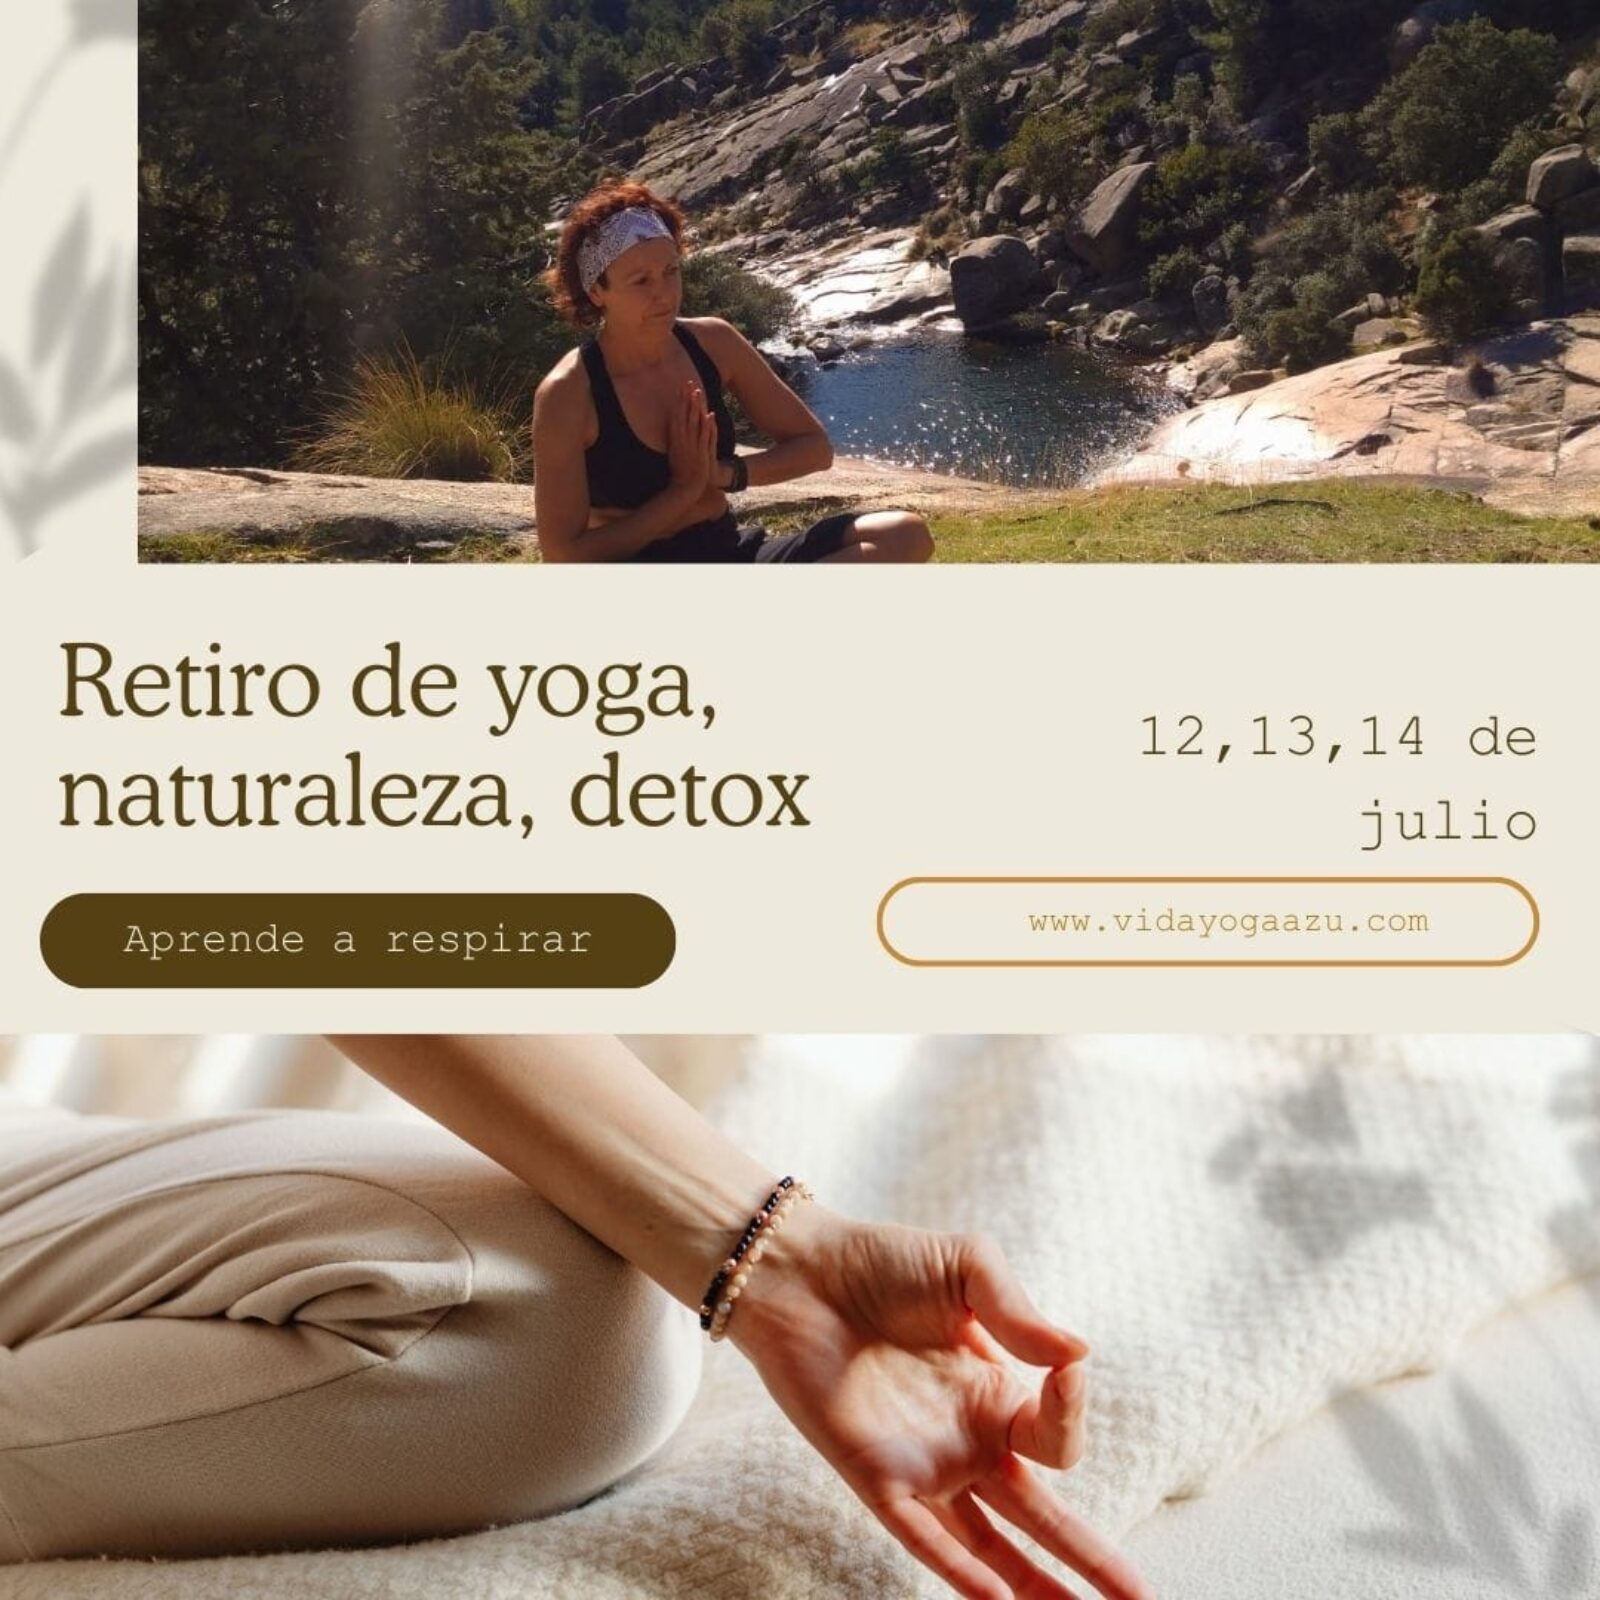 Retiro de yoga, naturaleza, detox